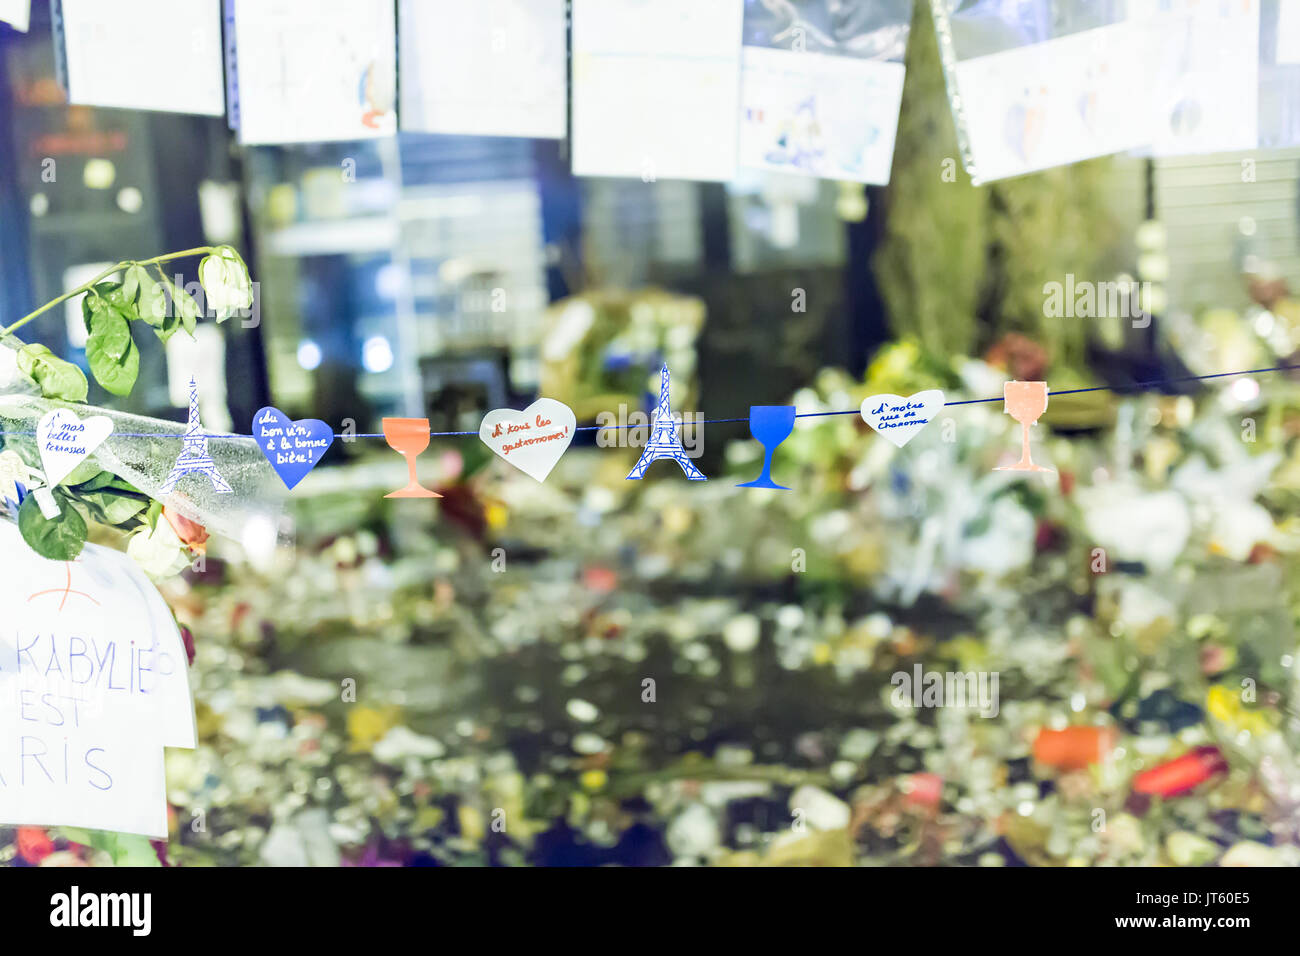 Thread von Notizen, Herz, und Gläser. Spontane Hommage an die Opfer der Terroranschläge in Paris, den 13. November 2015. Stockfoto